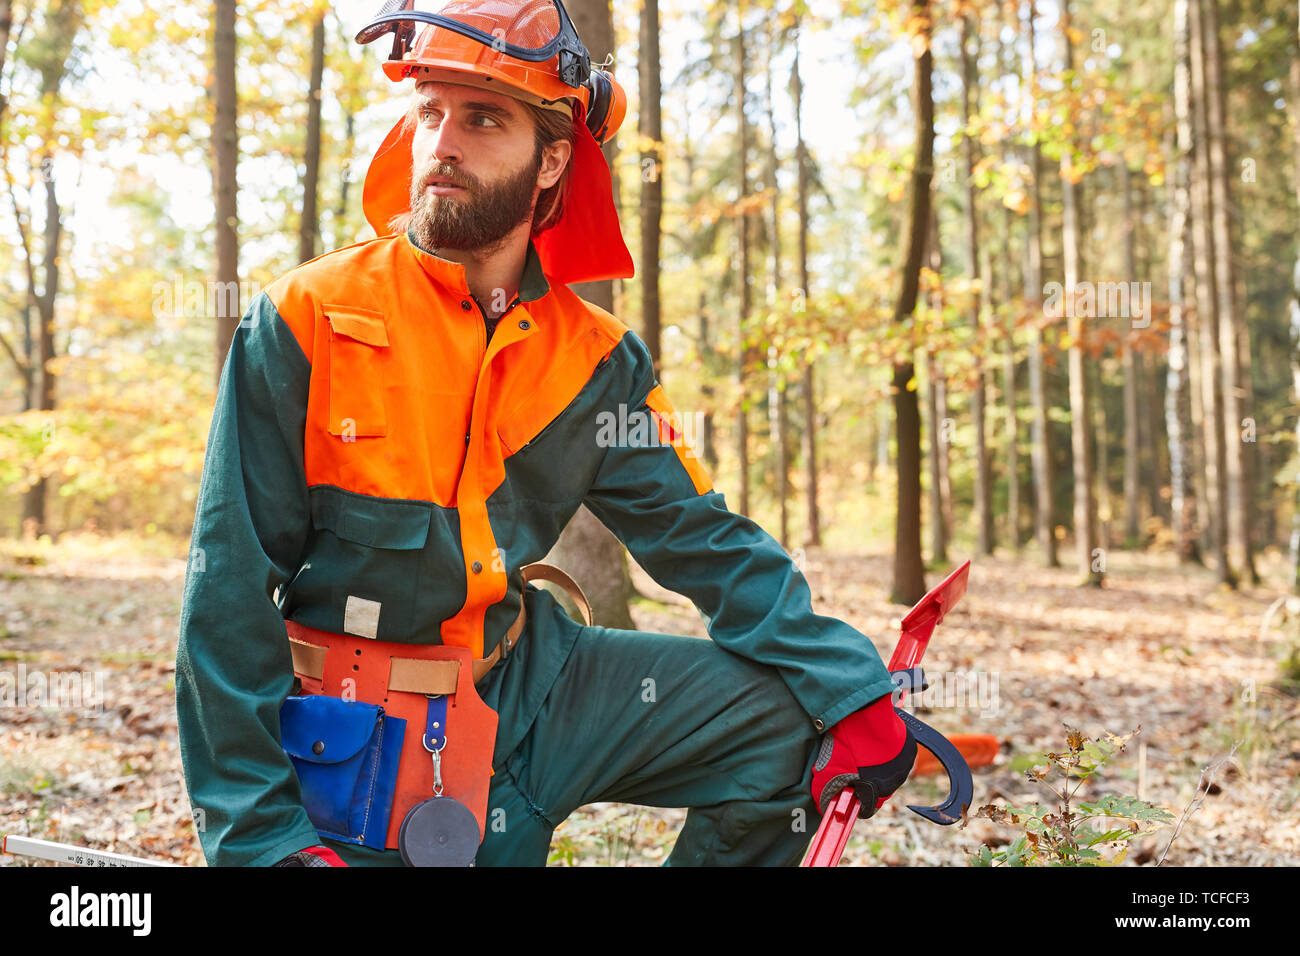 Der Mensch als Waldarbeiter und Holzfäller in Schutzkleidung bei der Arbeit  Stockfotografie - Alamy